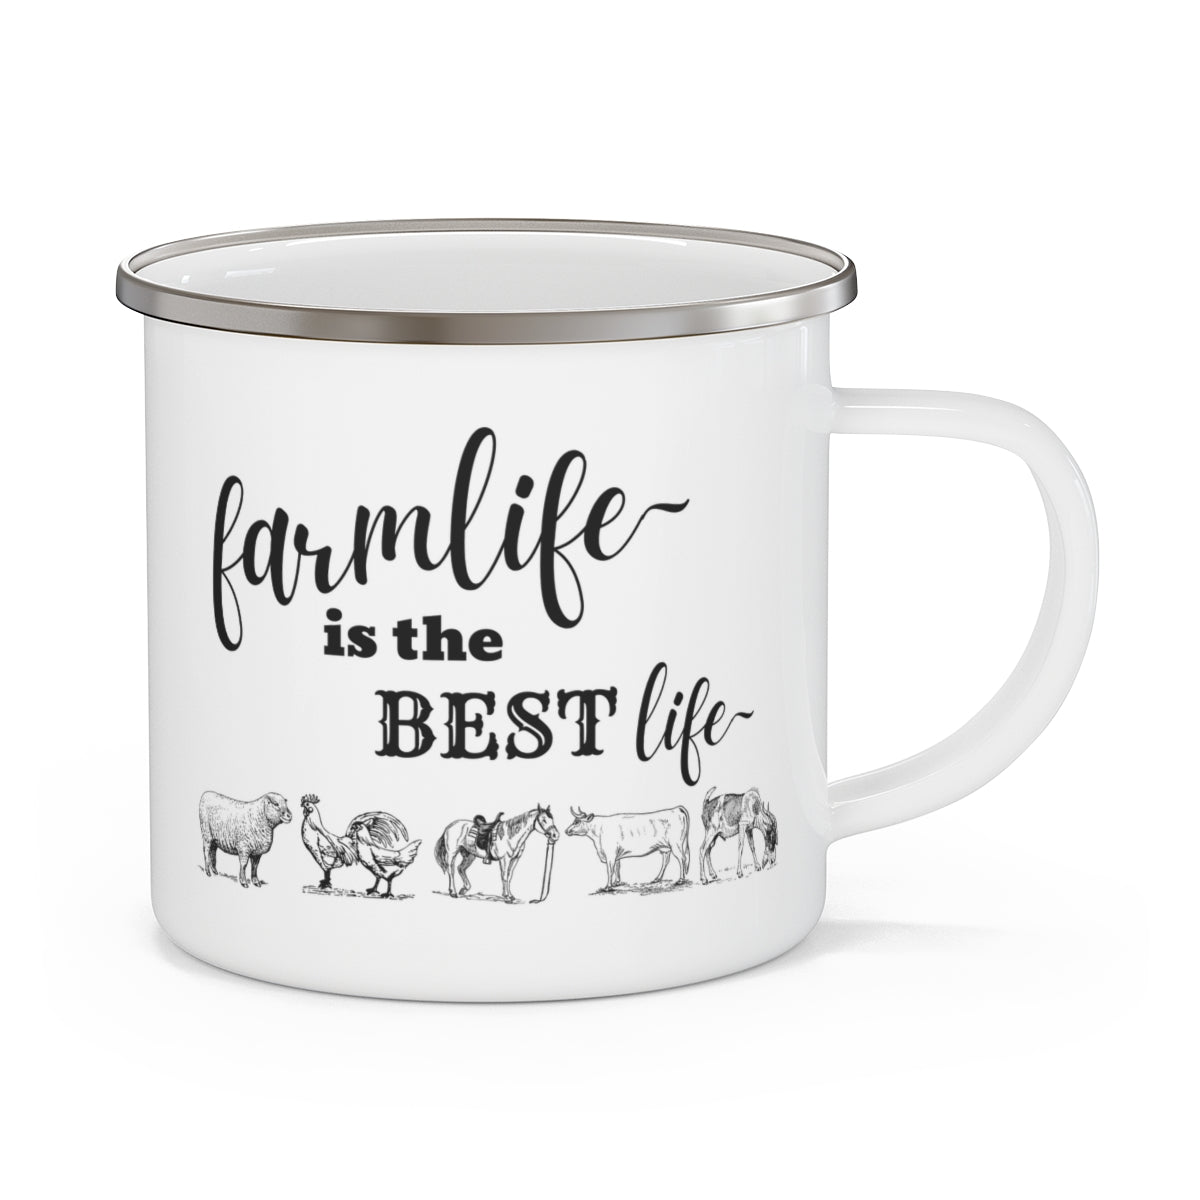 Farmlife Is The Best Life  - Enamel Mug